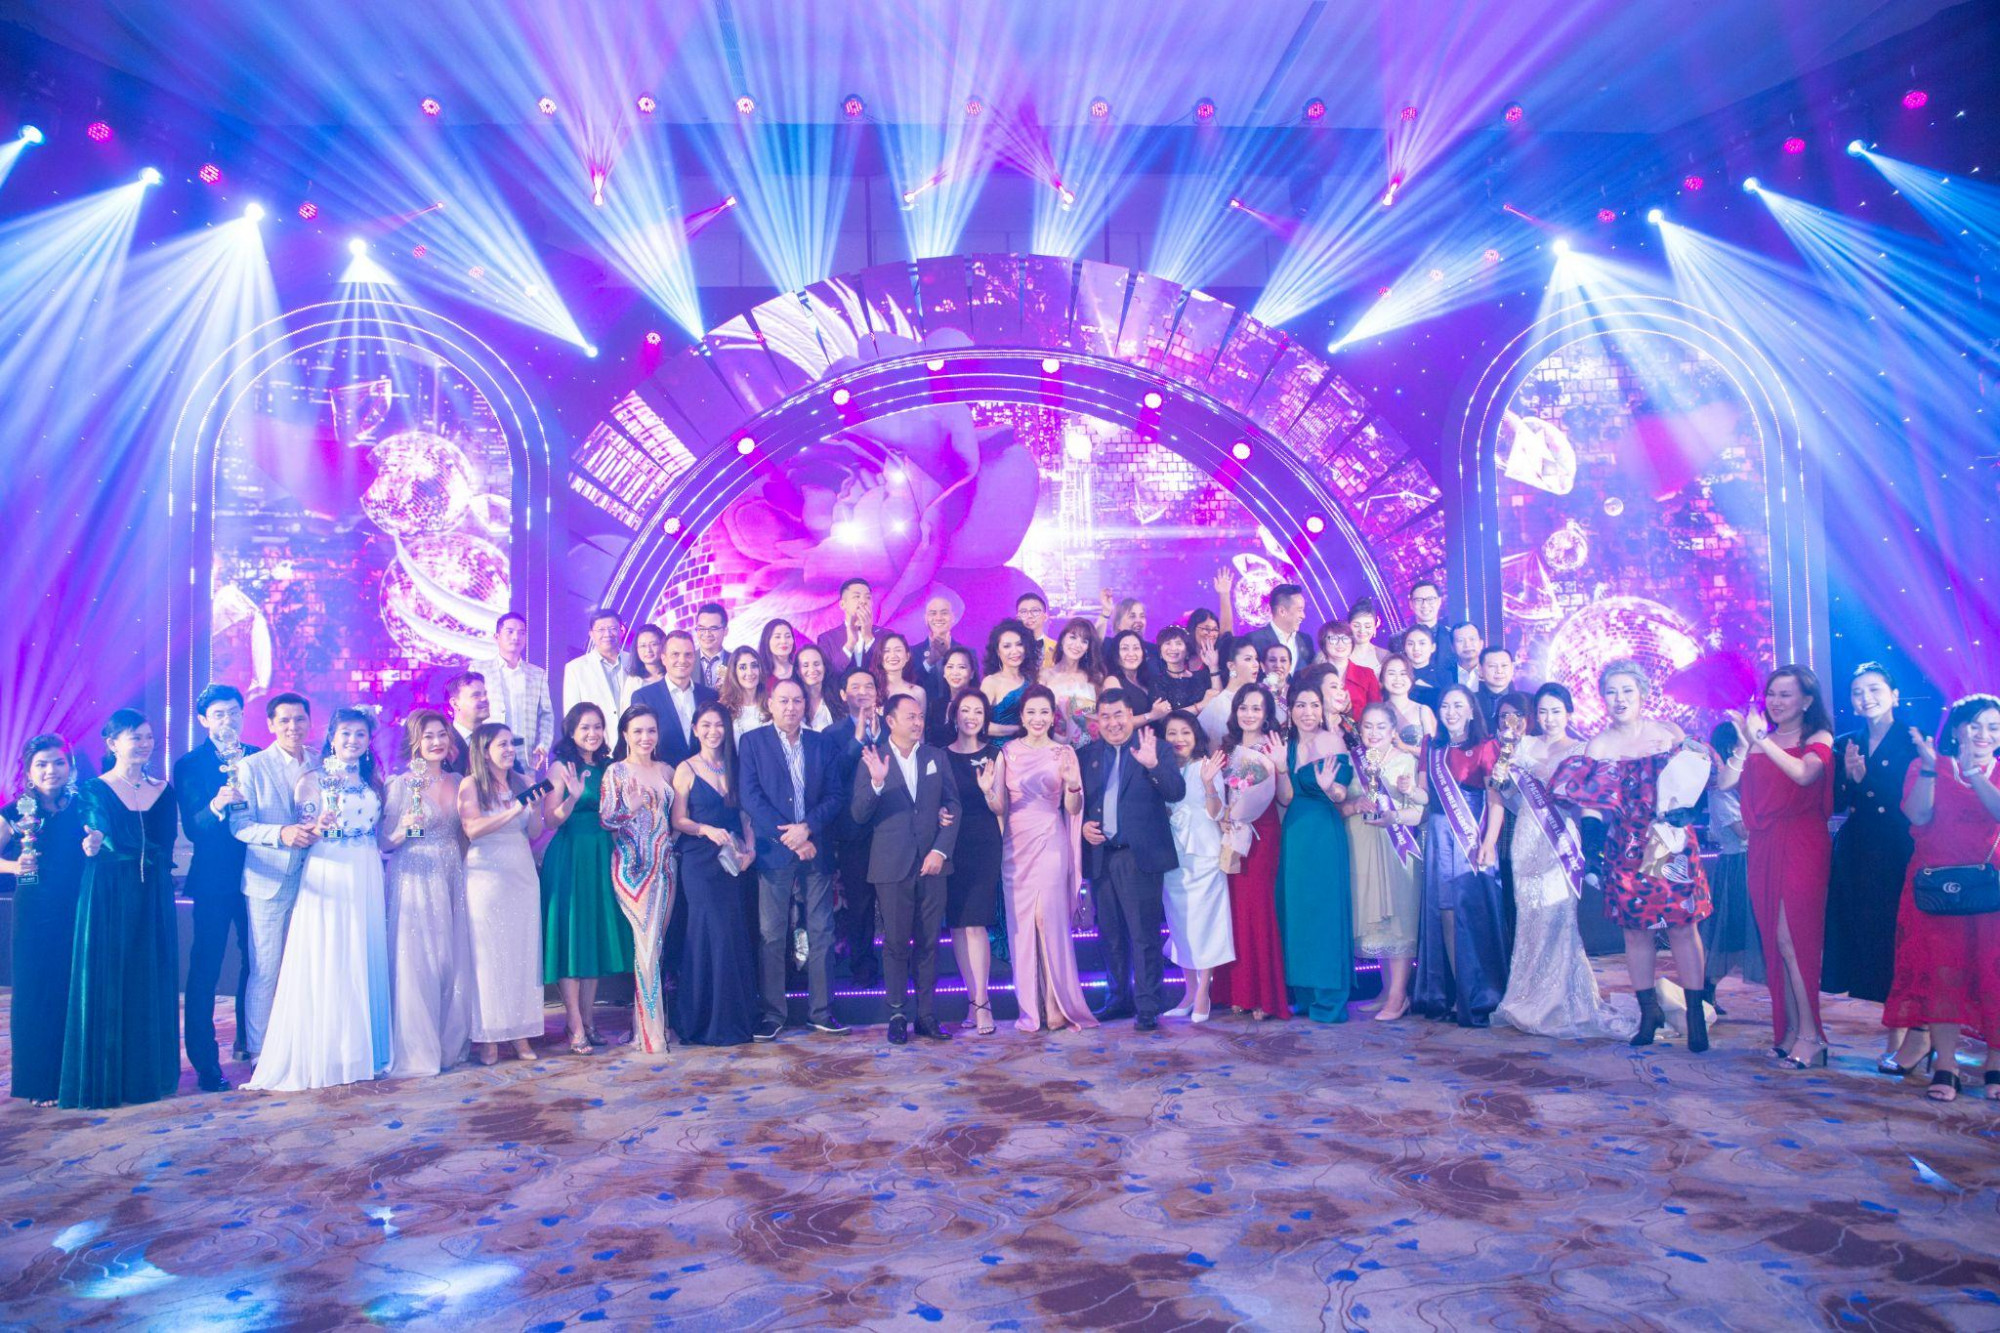 Lễ vinh danh Top 50 nữ lãnh đạo châu Á - Thái Bình Dương 2022 có sự quy tụ của đông đảo doanh nhân toàn cầu - Ảnh: WLIN Global Holdings